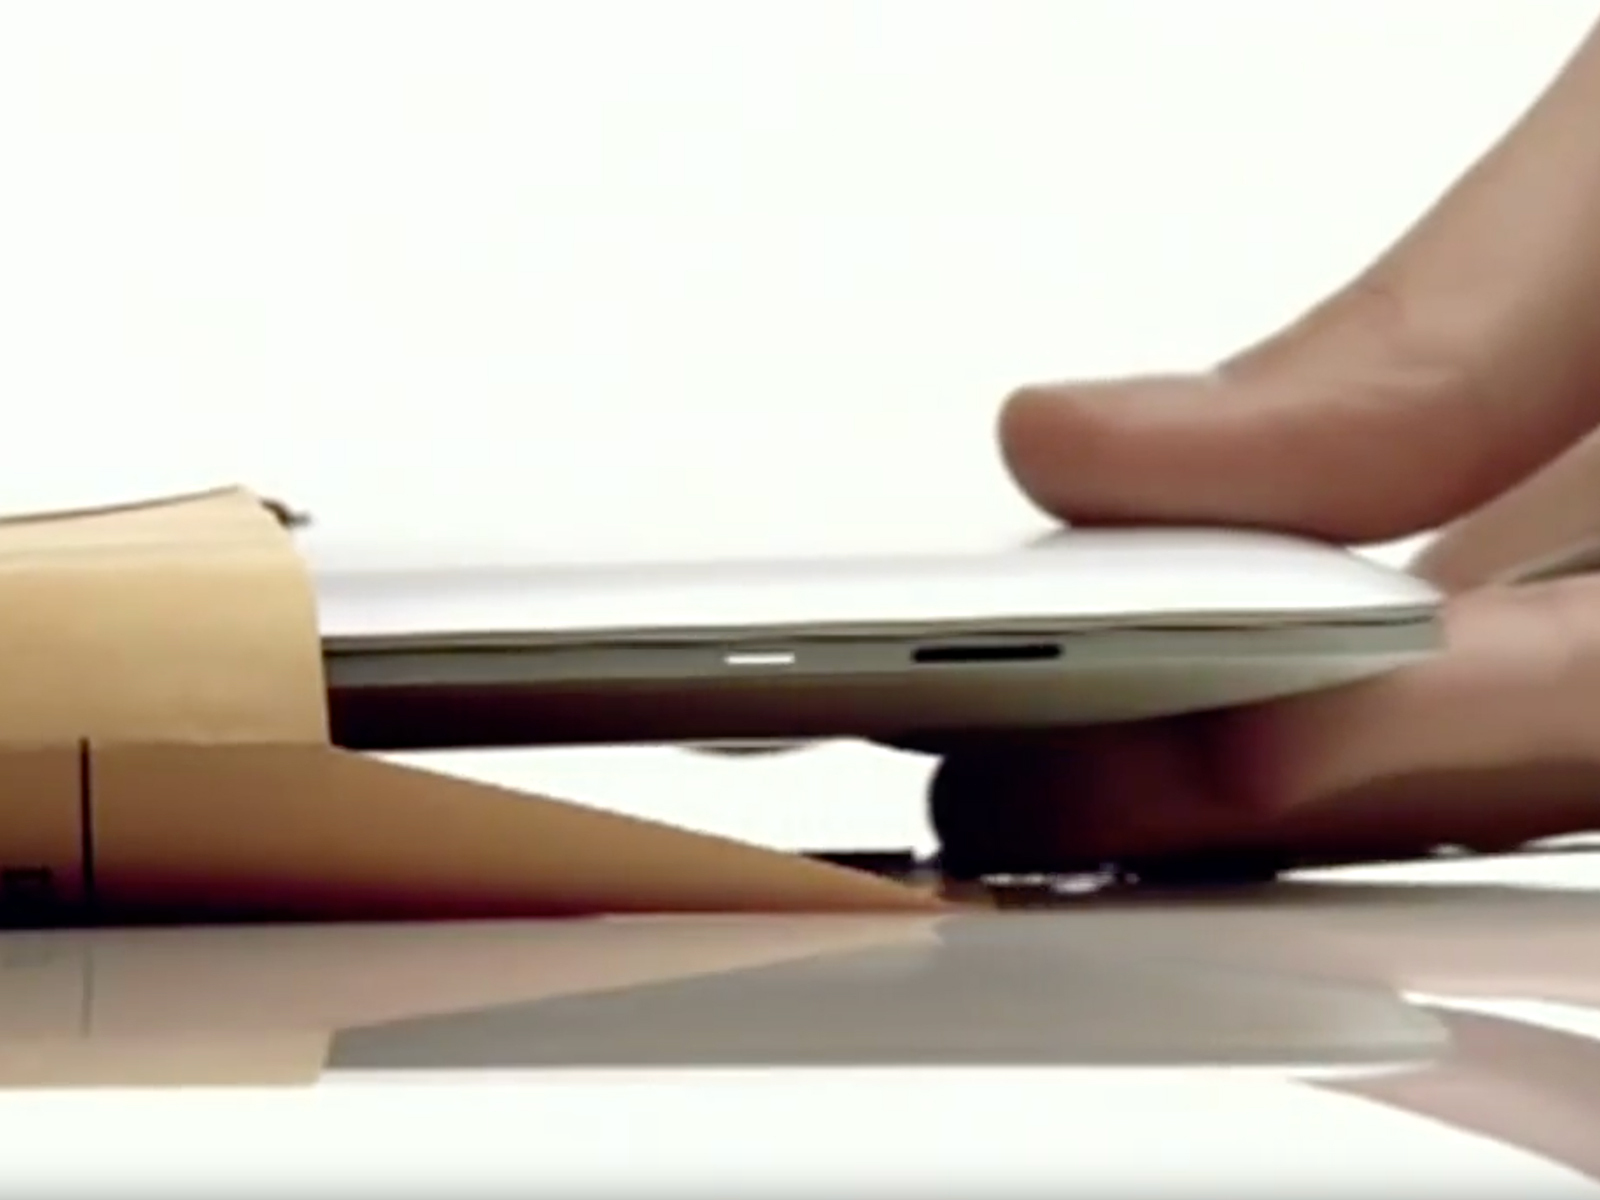 MacBook Air: thinny thin thin